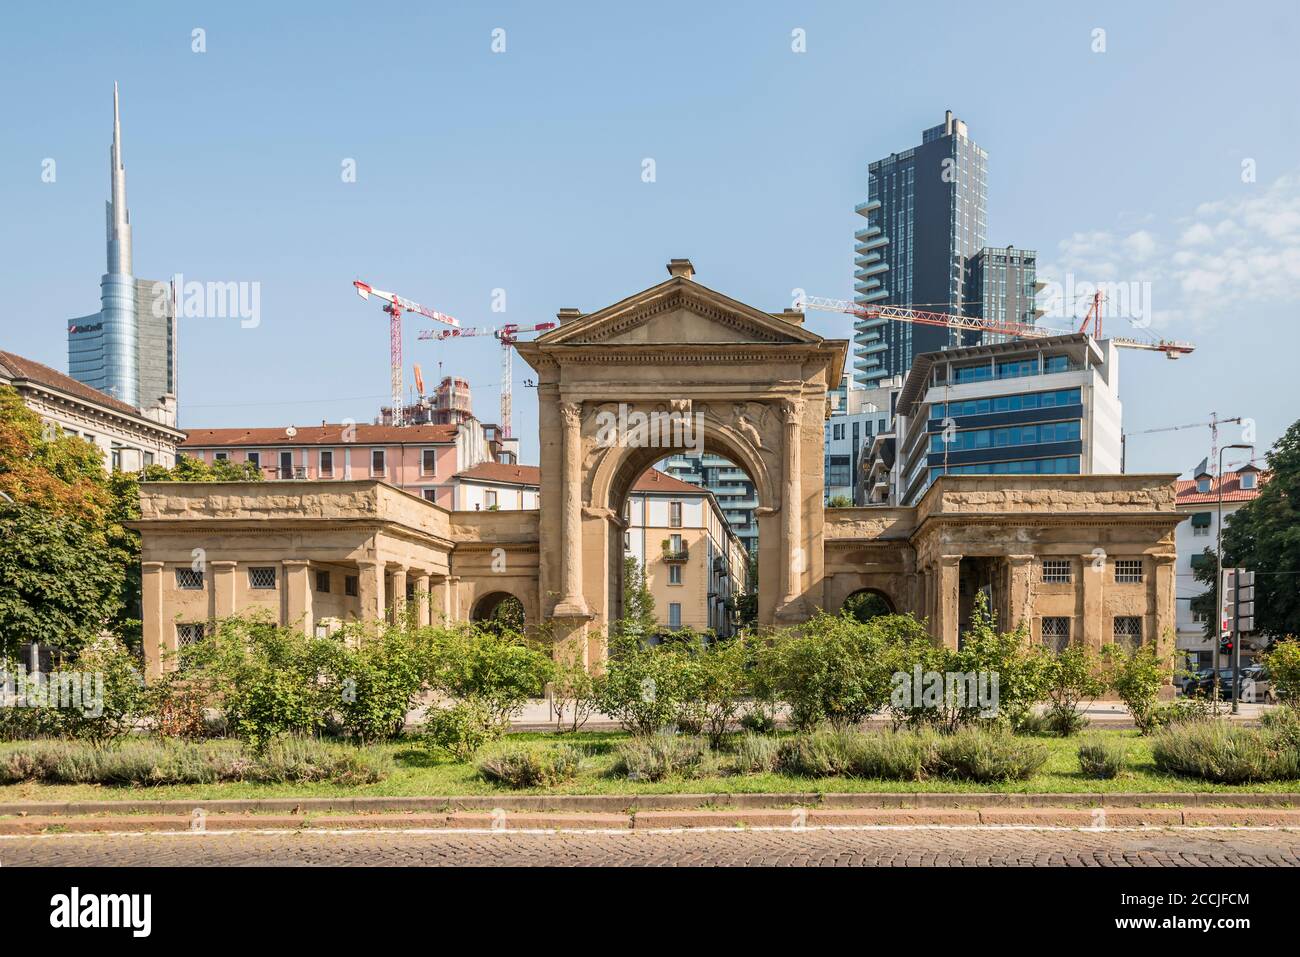 MAILAND, ITALIEN - August 20 2020: Stadtbild mit neuen Wolkenkratzern von Business-Hub Stadtentwicklung aus dem monumentalen Stadteingang, auf augus gedreht Stockfoto